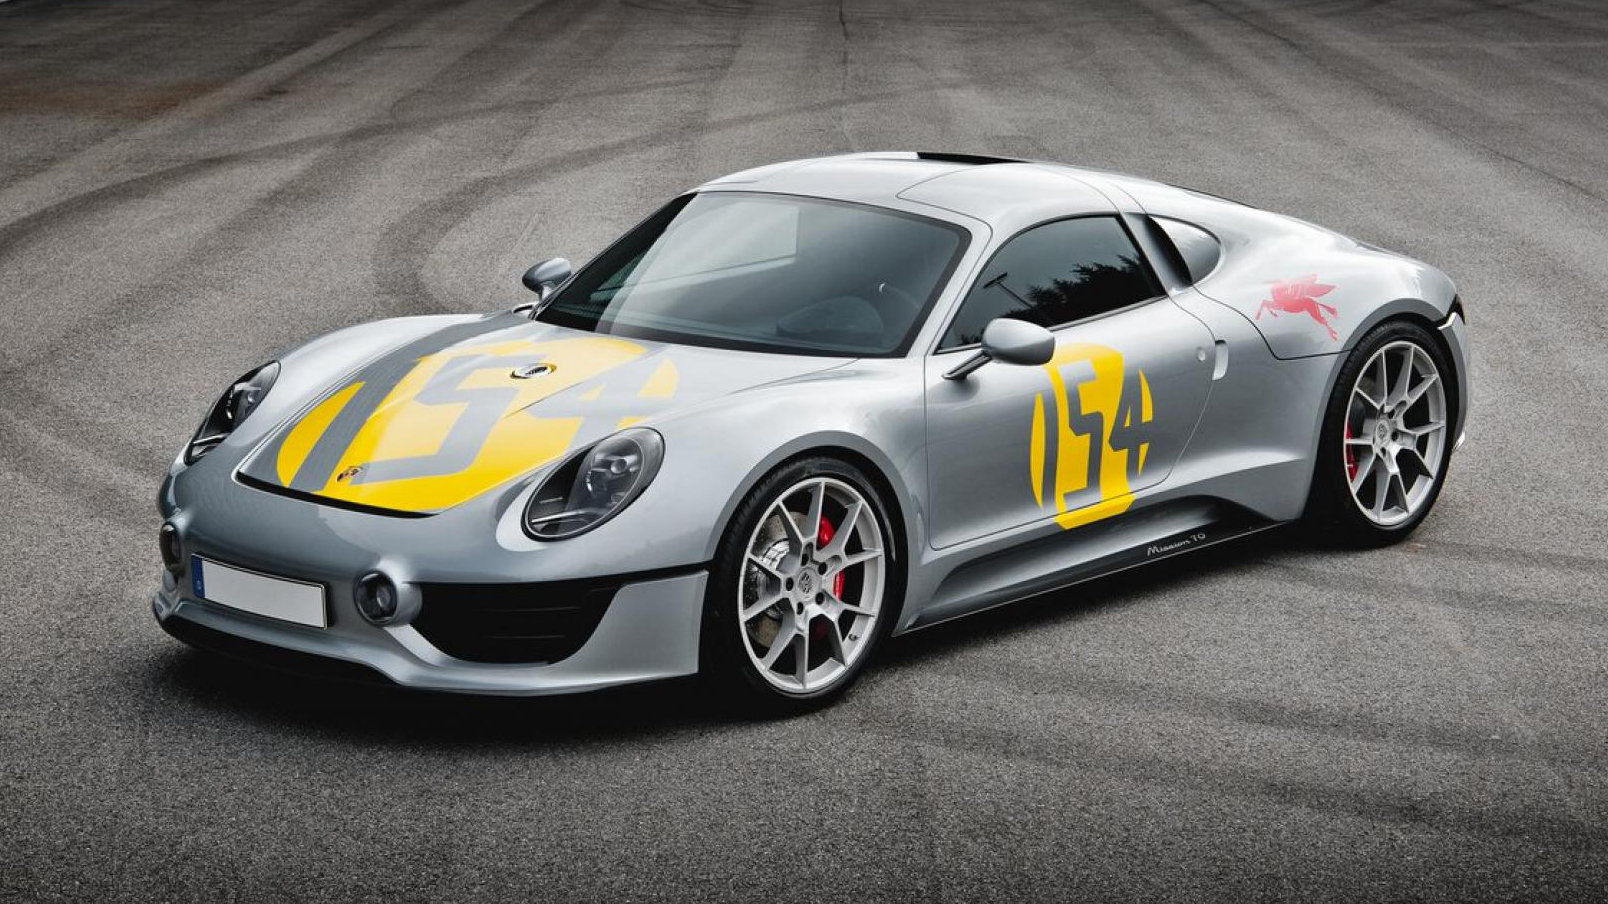 Porsche Concept Cars